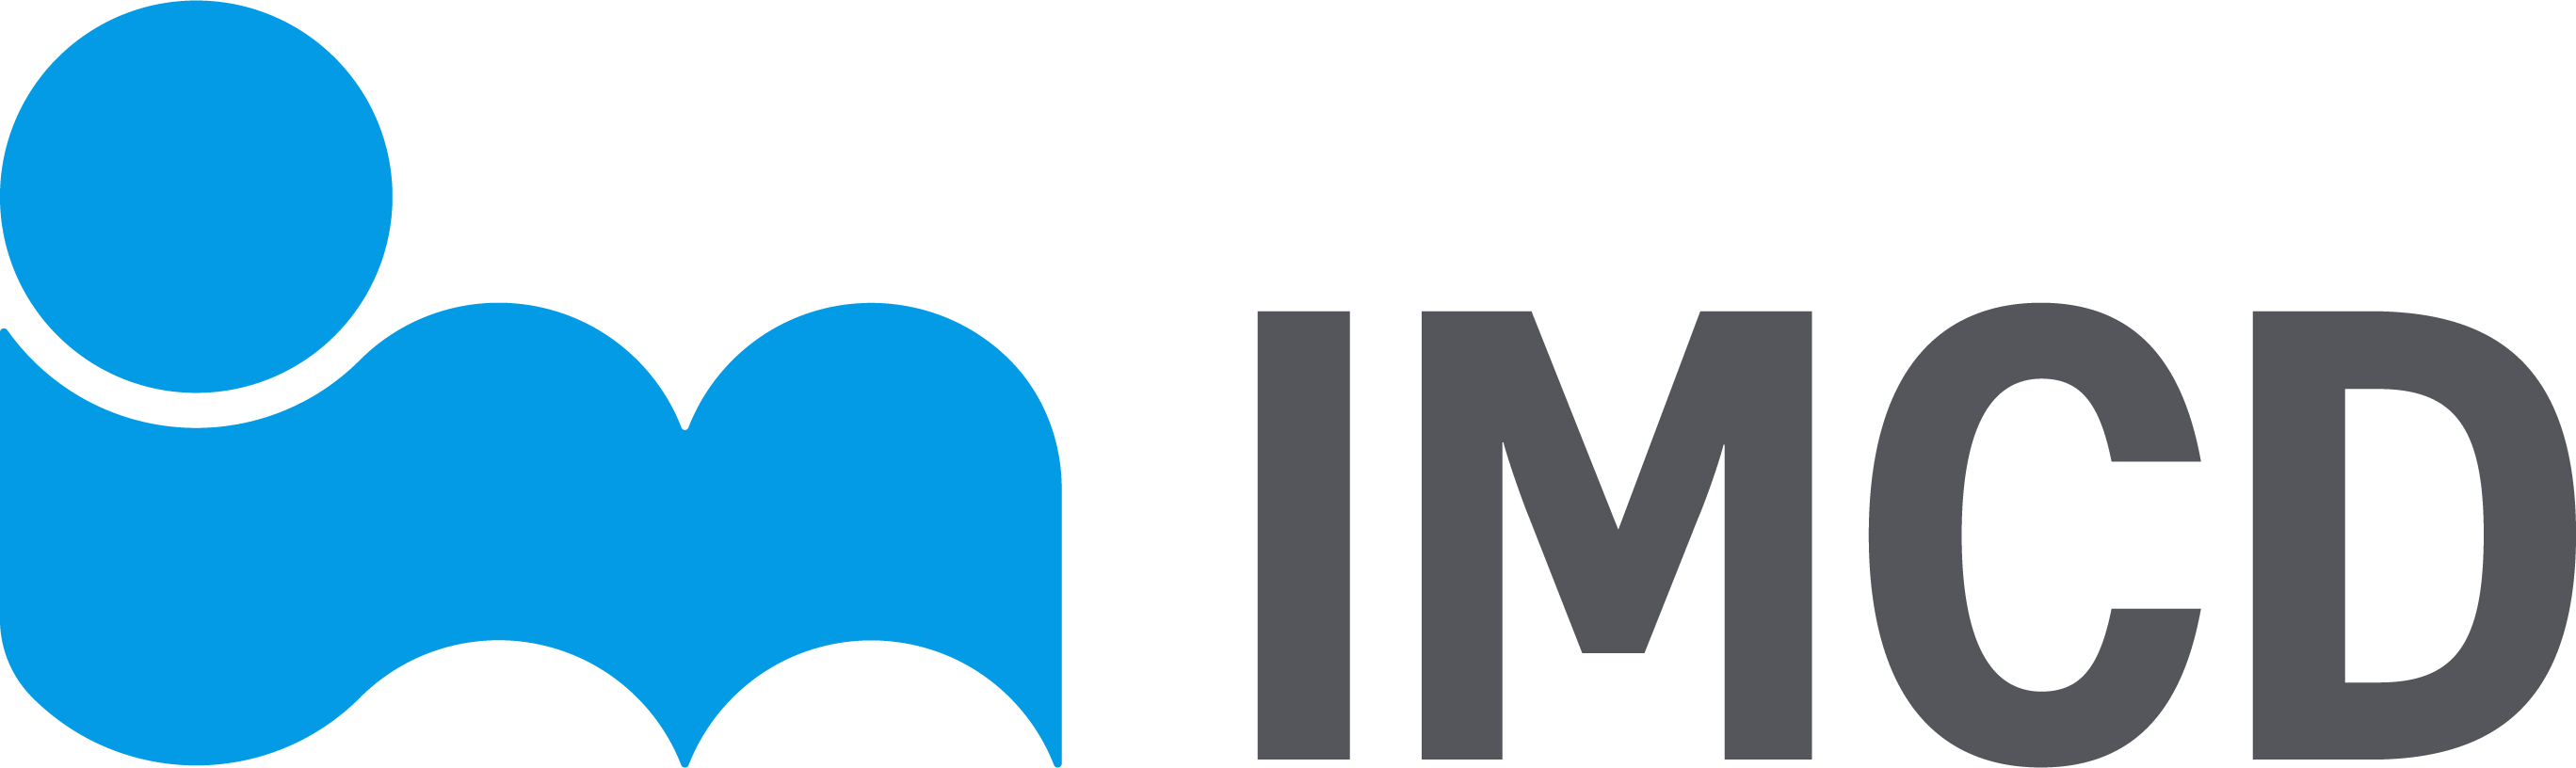 IMCD Brand Logo